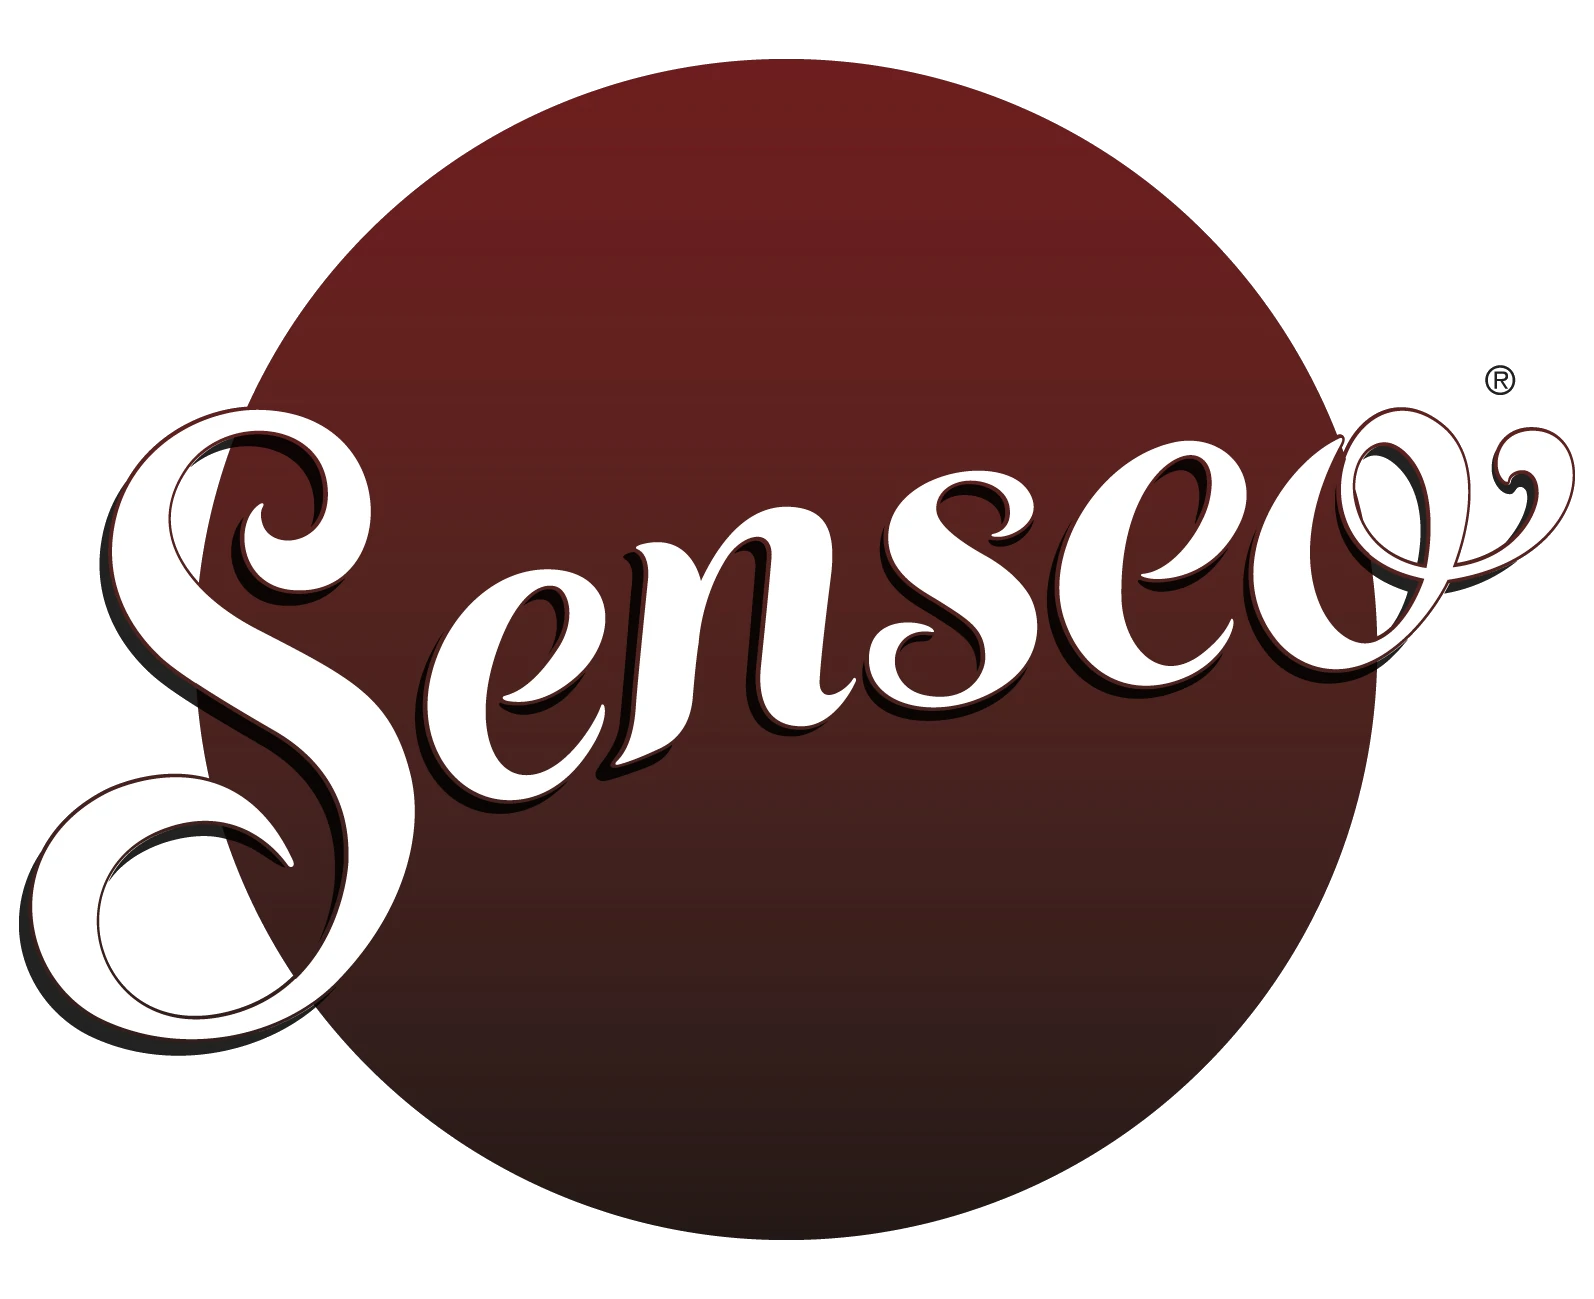 Logo der Marke Senseo